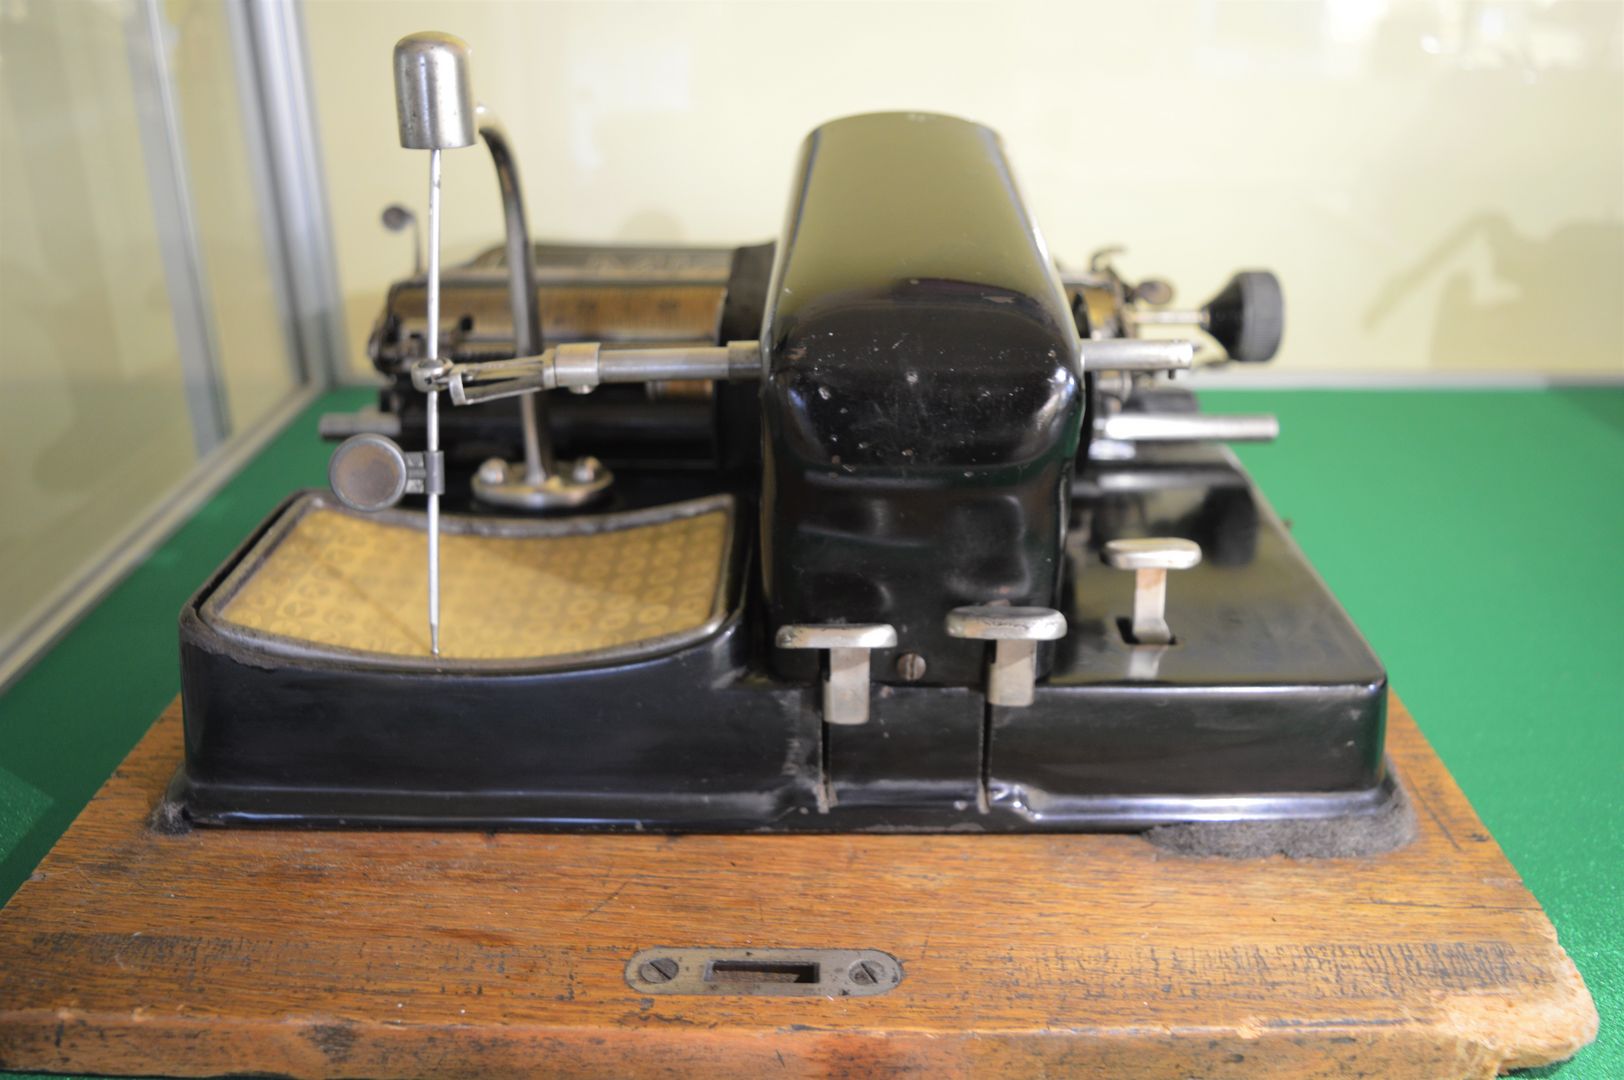 Zdjęcie przedstawia zabytkową maszynę do pisania z kolekcji Józefa Niedużaka